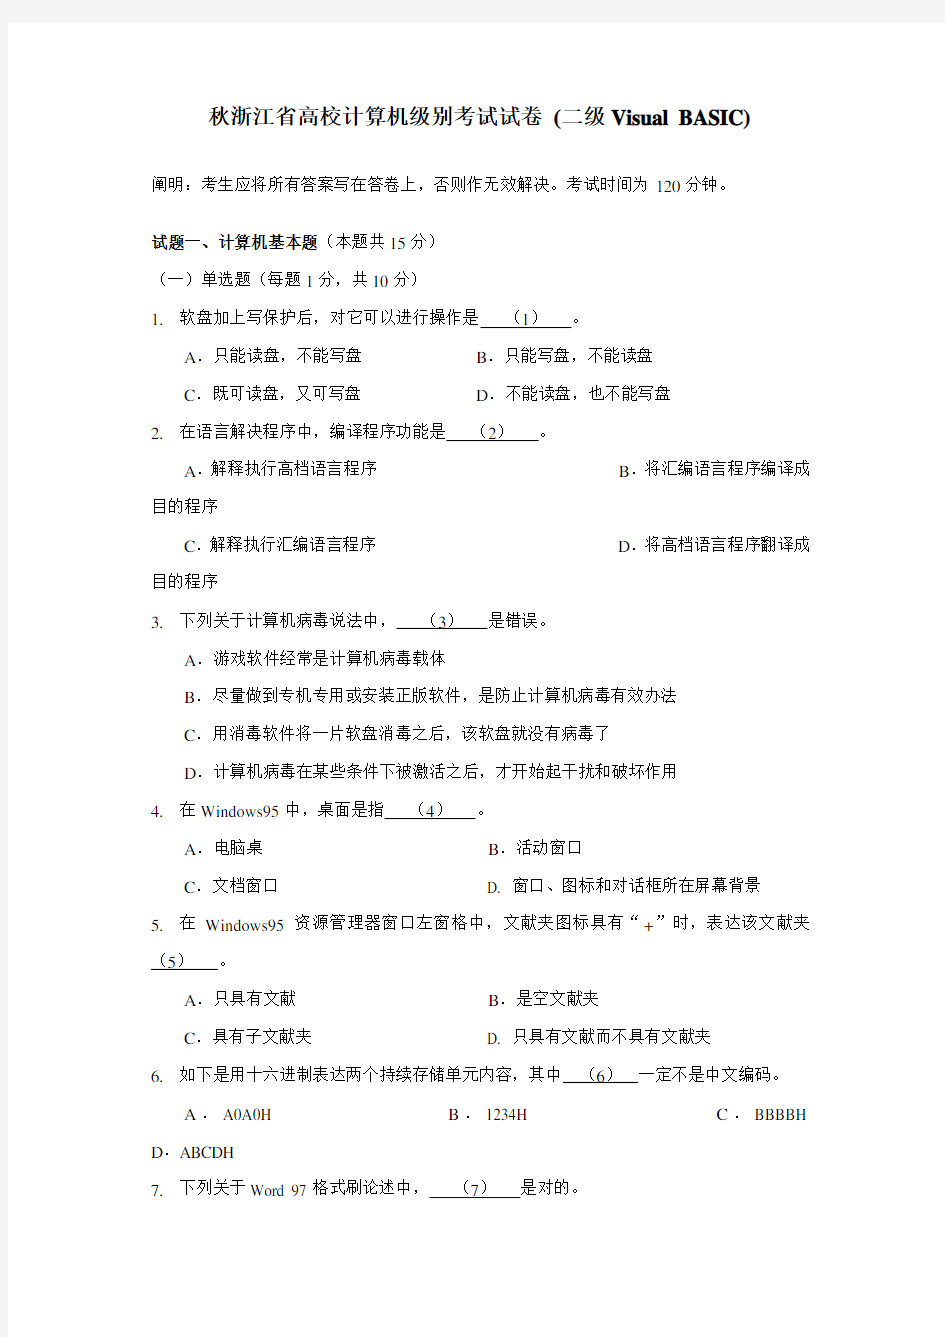 2021年秋浙江省高校计算机等级考试试卷二级VisualBASIC